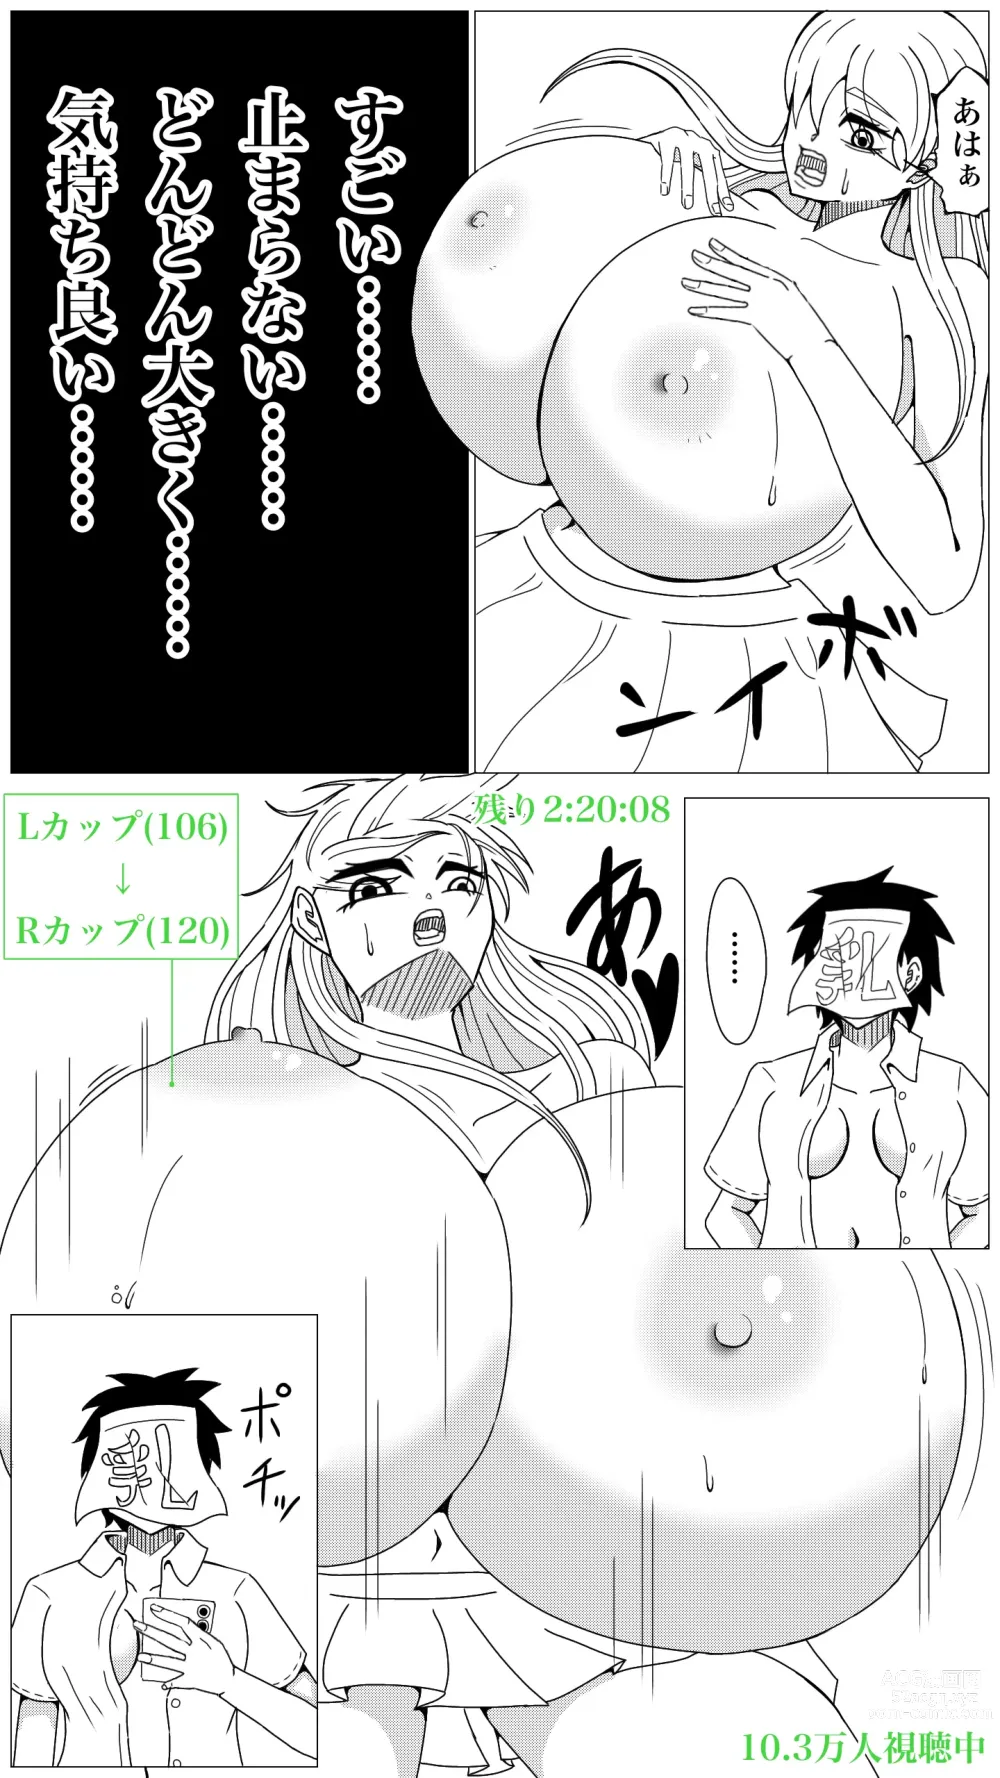 Page 9 of doujinshi Oppai Shiisougemu